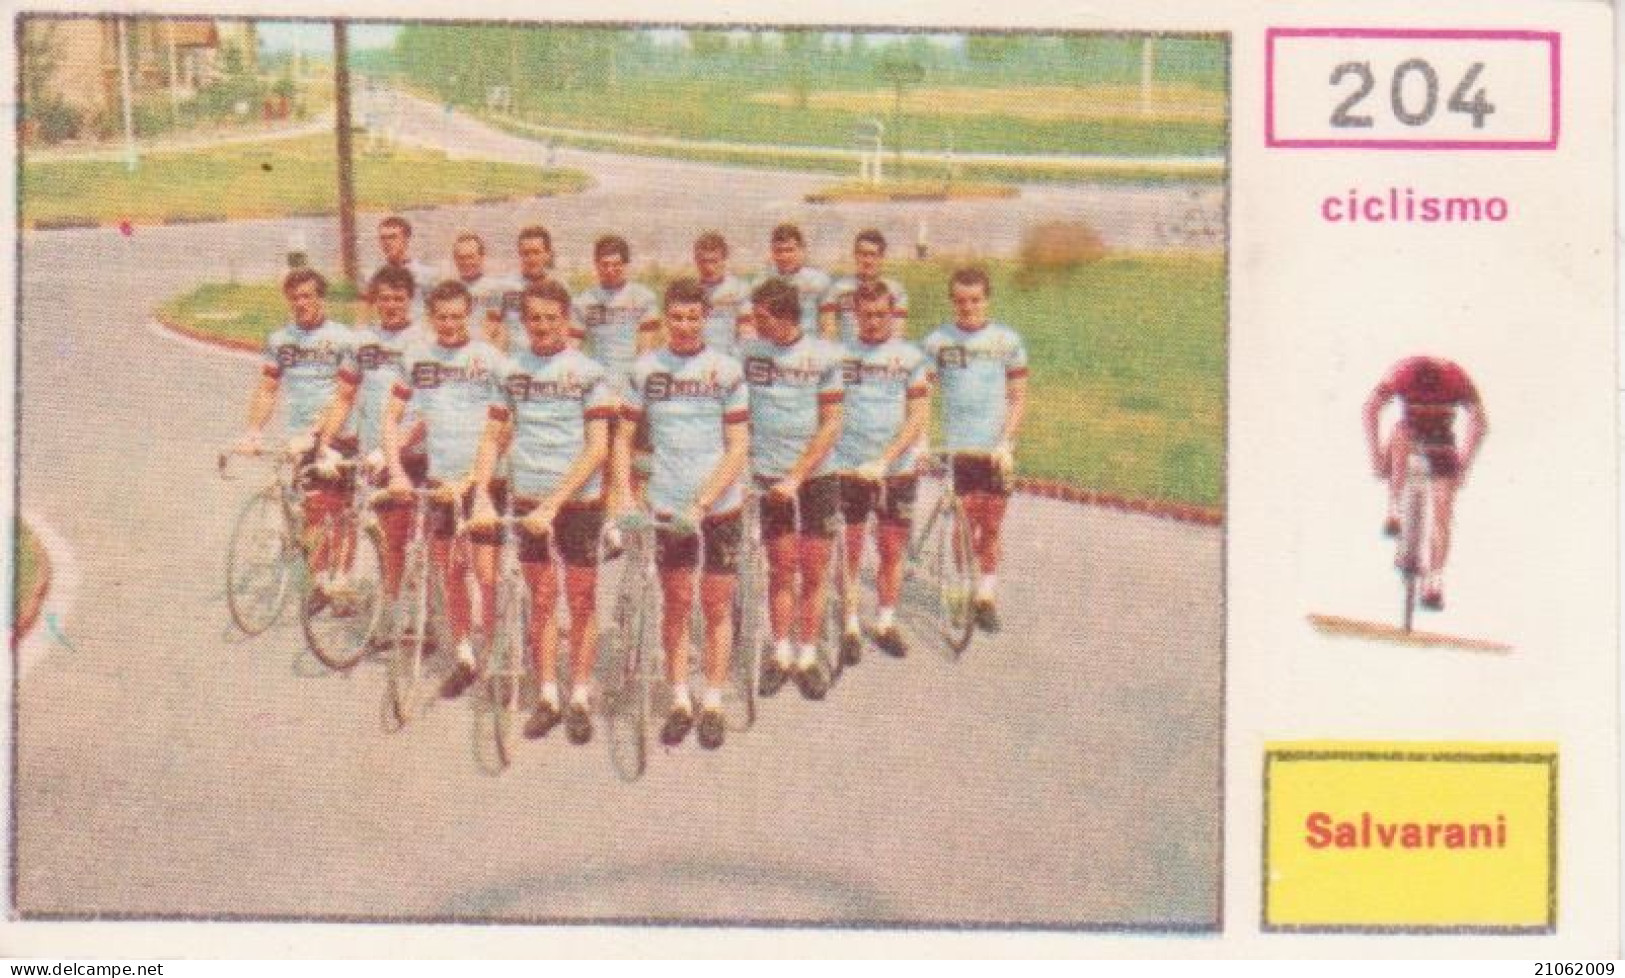 204 CICLISMO SQUADRA SALVARANI CYCLING TEAM - CAMPIONI DELLO SPORT 1967-68 PANINI STICKERS FIGURINE - Radsport